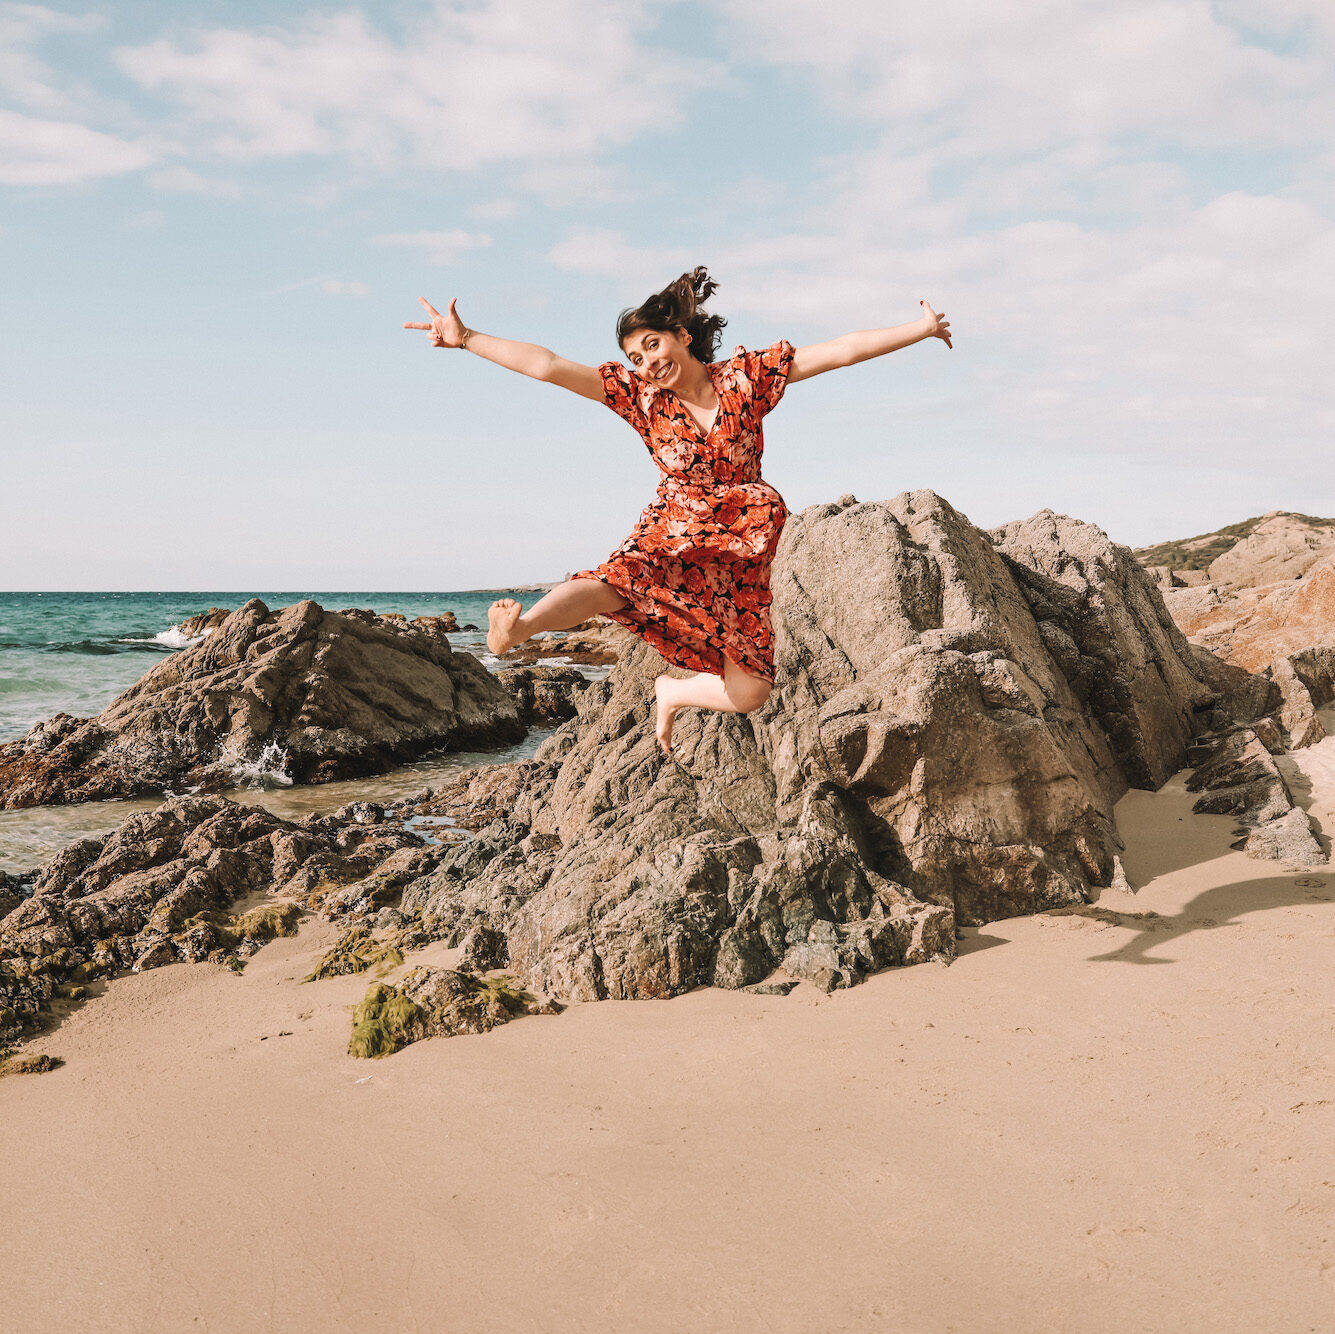 Marcy Alves qui fait une figure en sautant sur une plage à Calvi